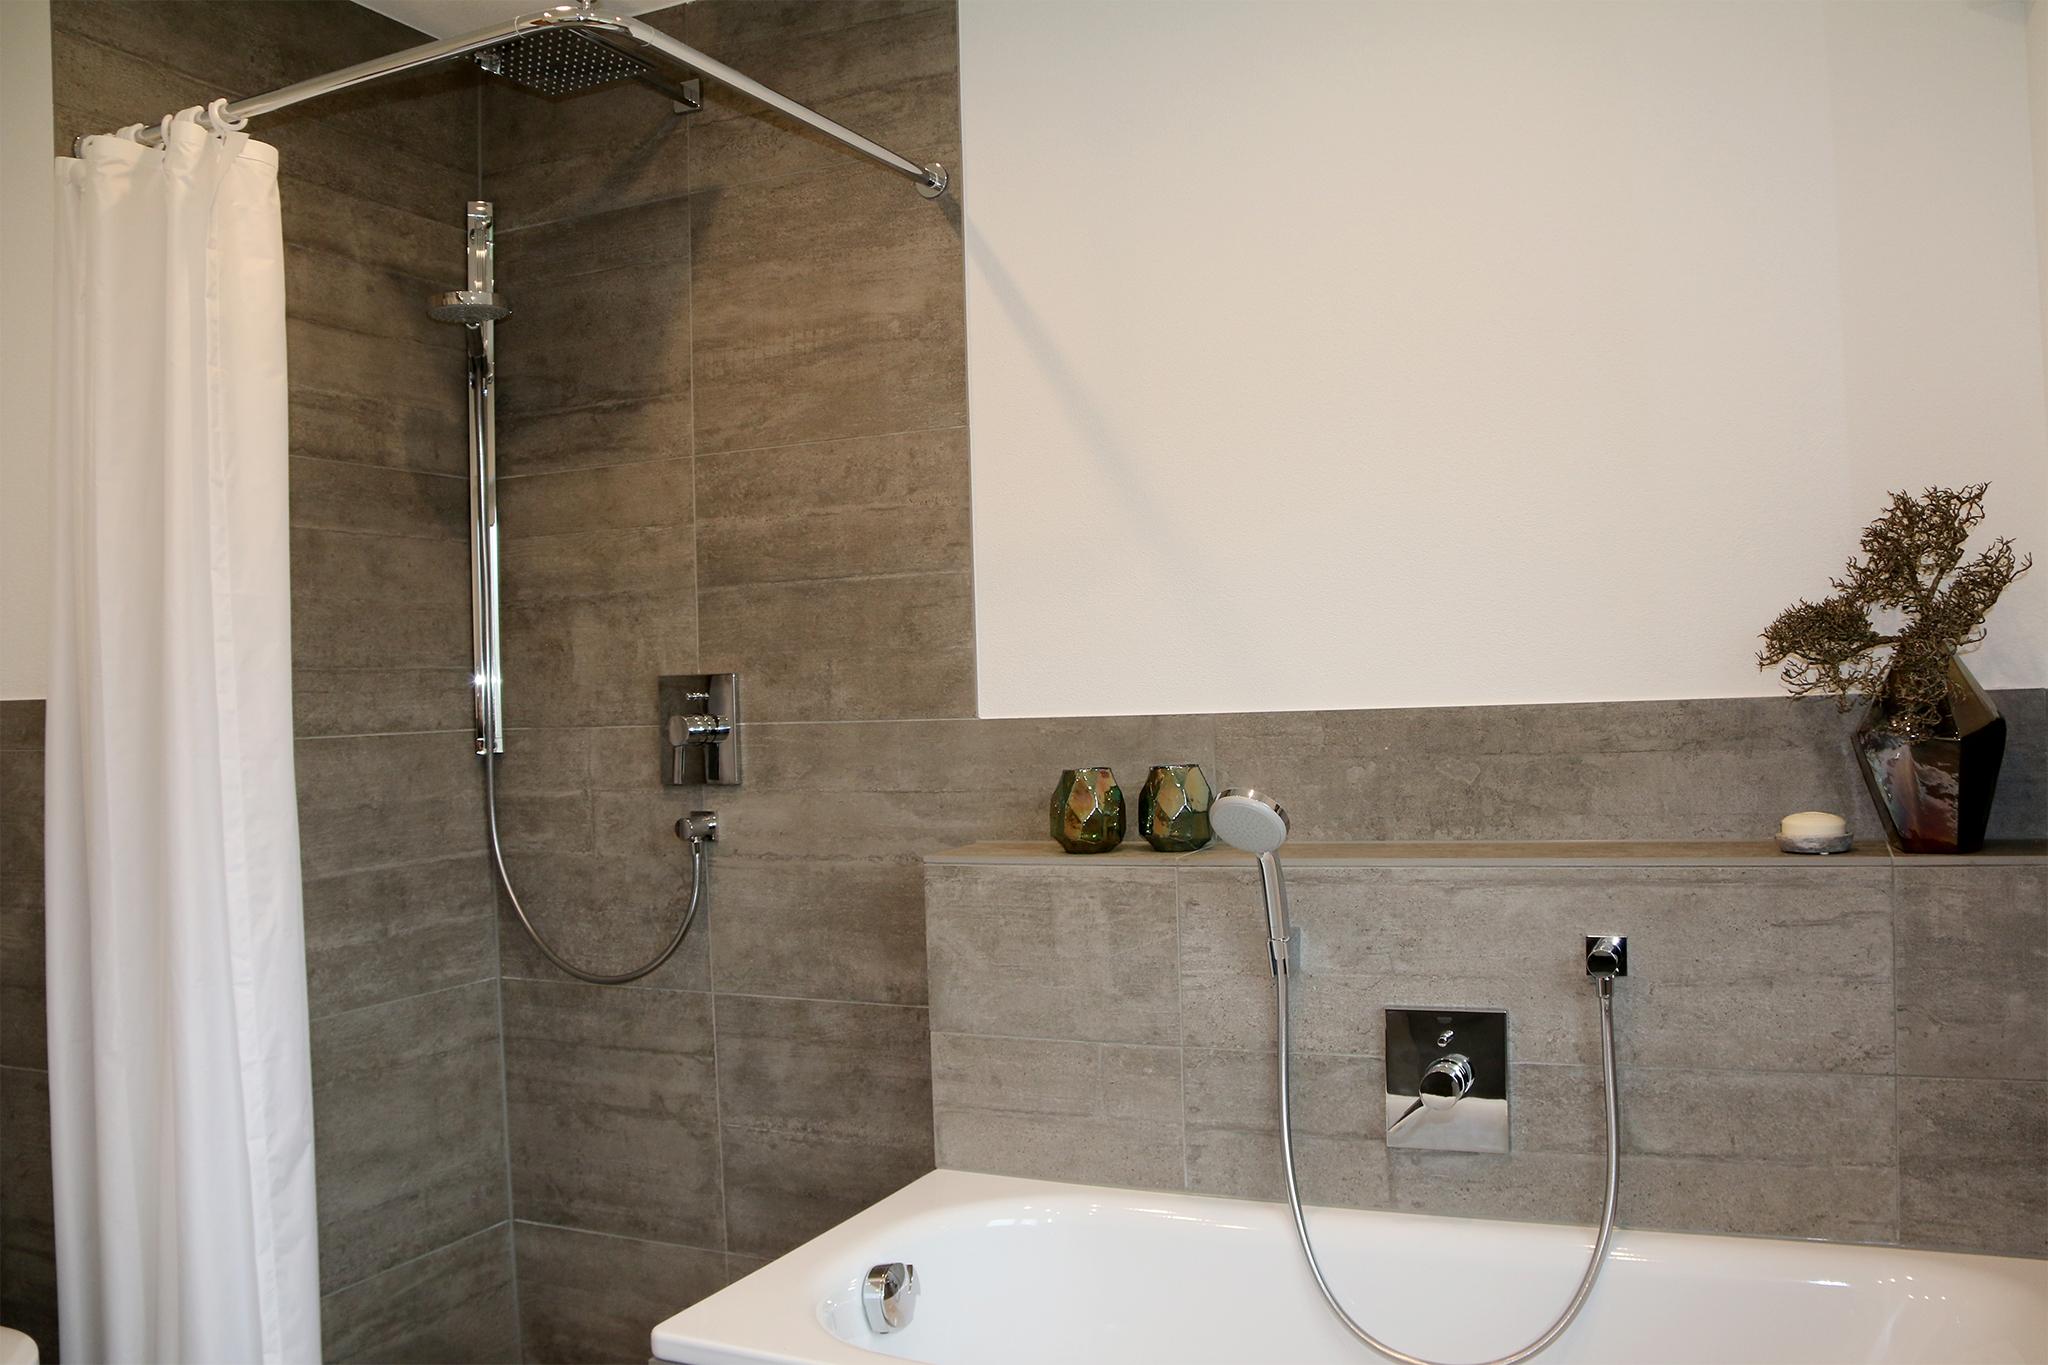 Bodenebene Dusche #badewanne #modernesbadezimmer #vormauerung ©HEIMWOHL GmbH